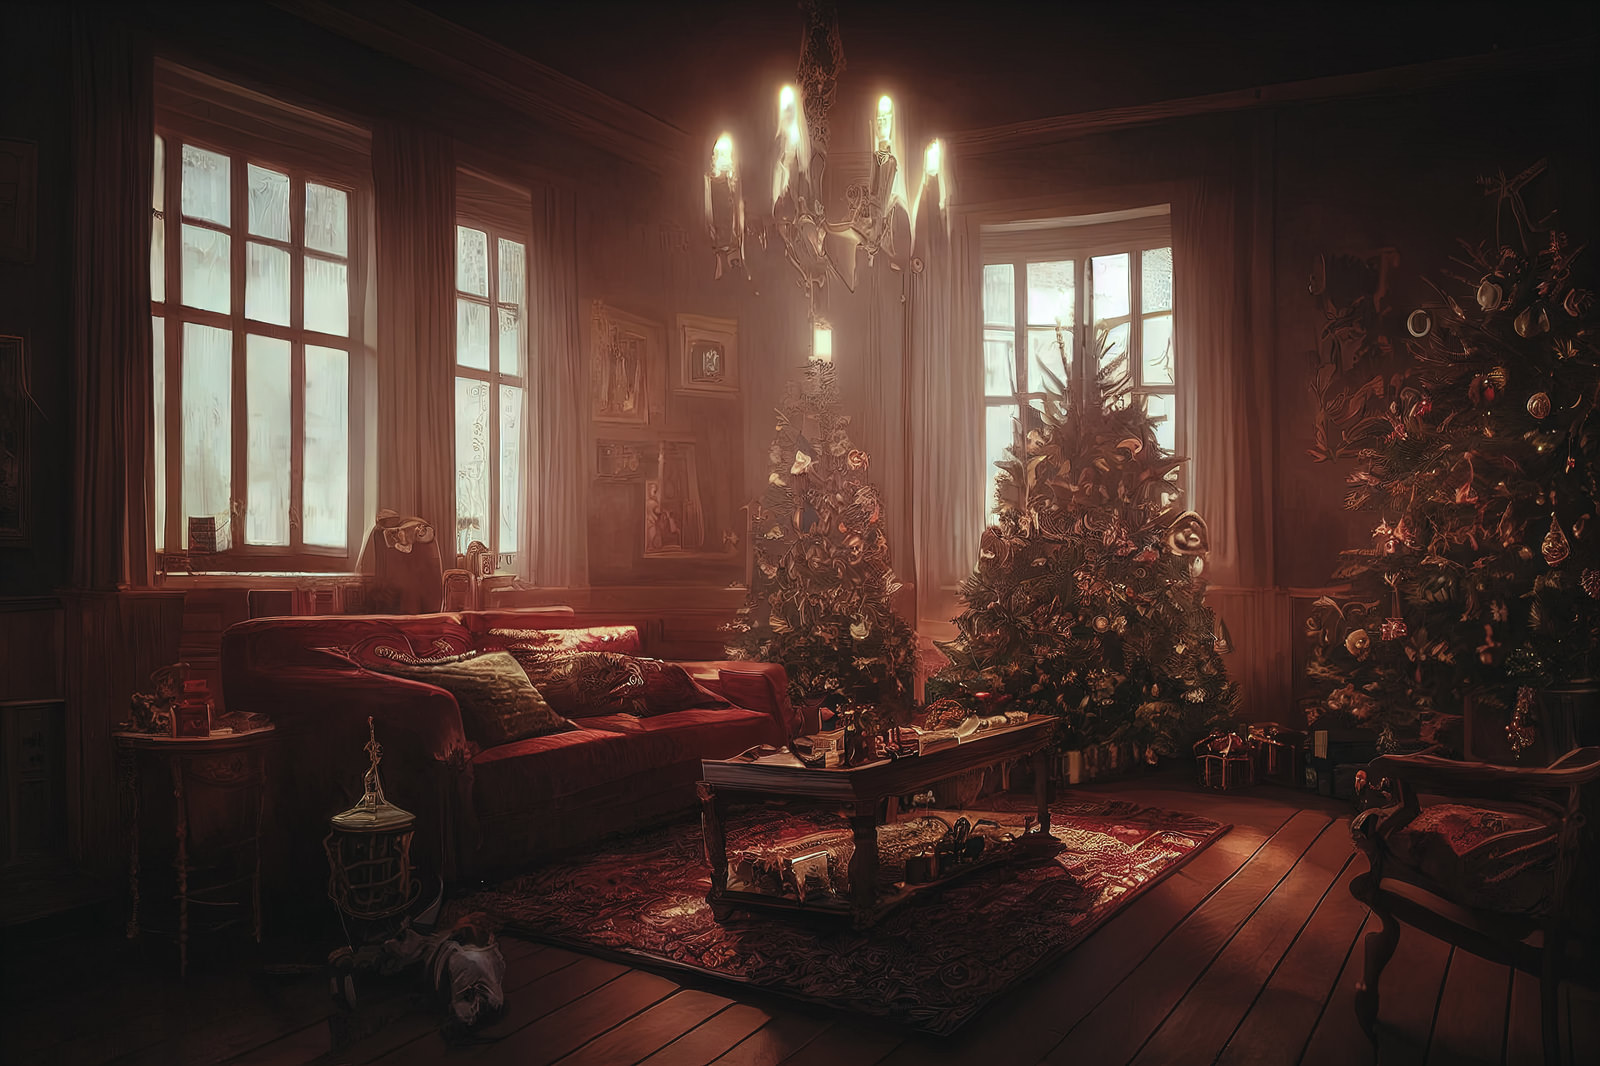 「クリスマスツリーとプレゼントが置かれたリビングの様子 | フリー素材のぱくたそ」の写真